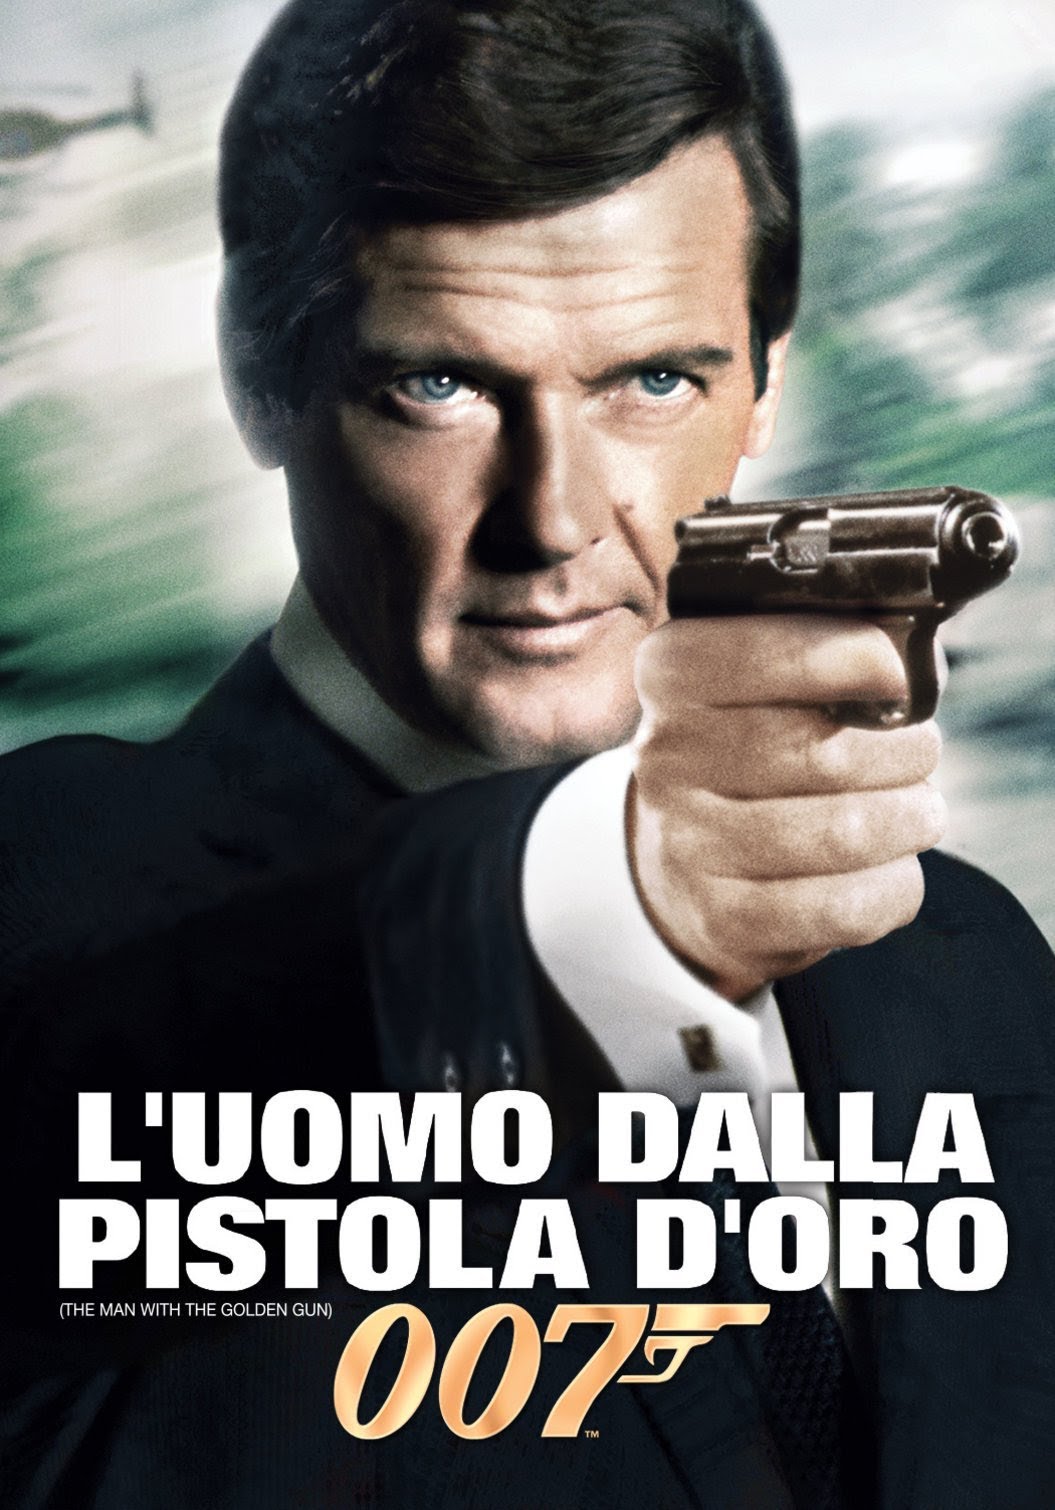 007 – L’uomo dalla pistola d’oro [HD] (1974)